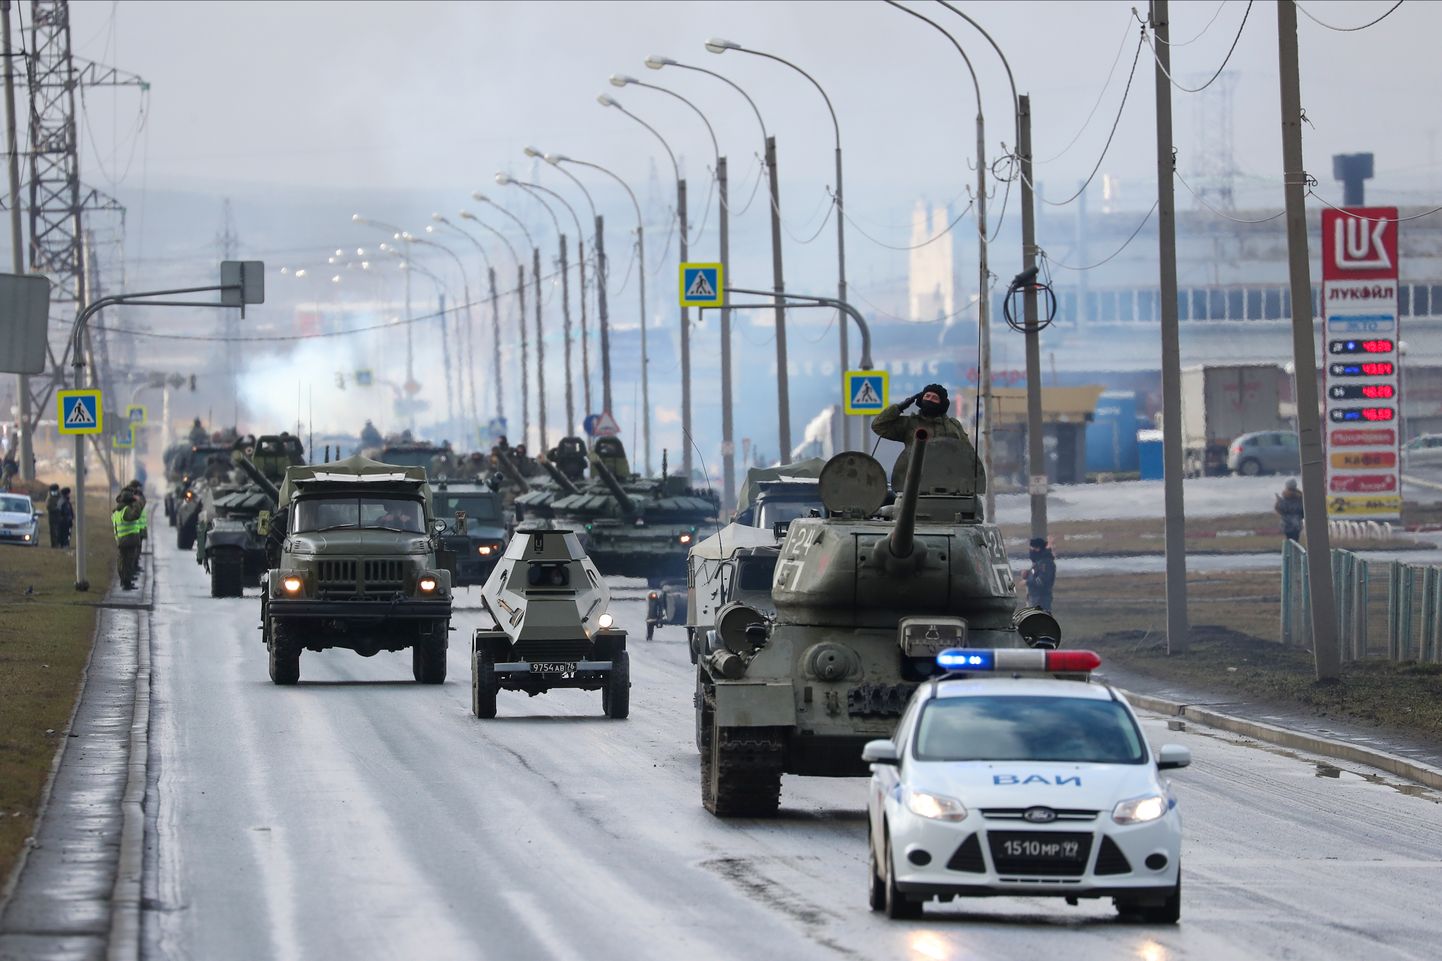 Venemaa lahingutehnika Jekaterinburgis paraadi peaproovil.